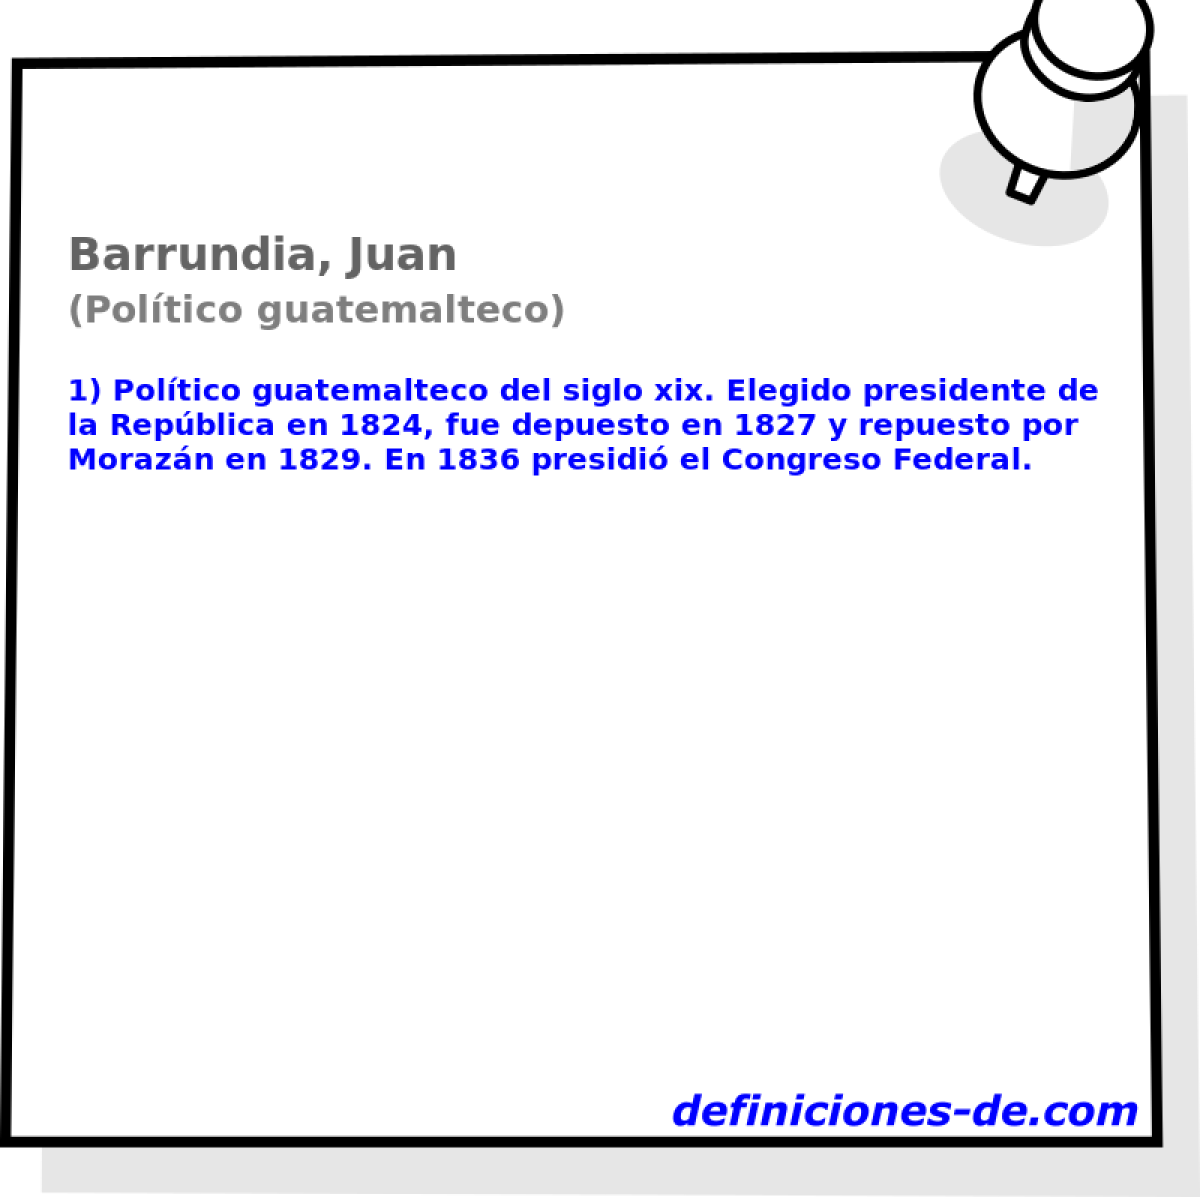 Barrundia, Juan (Poltico guatemalteco)